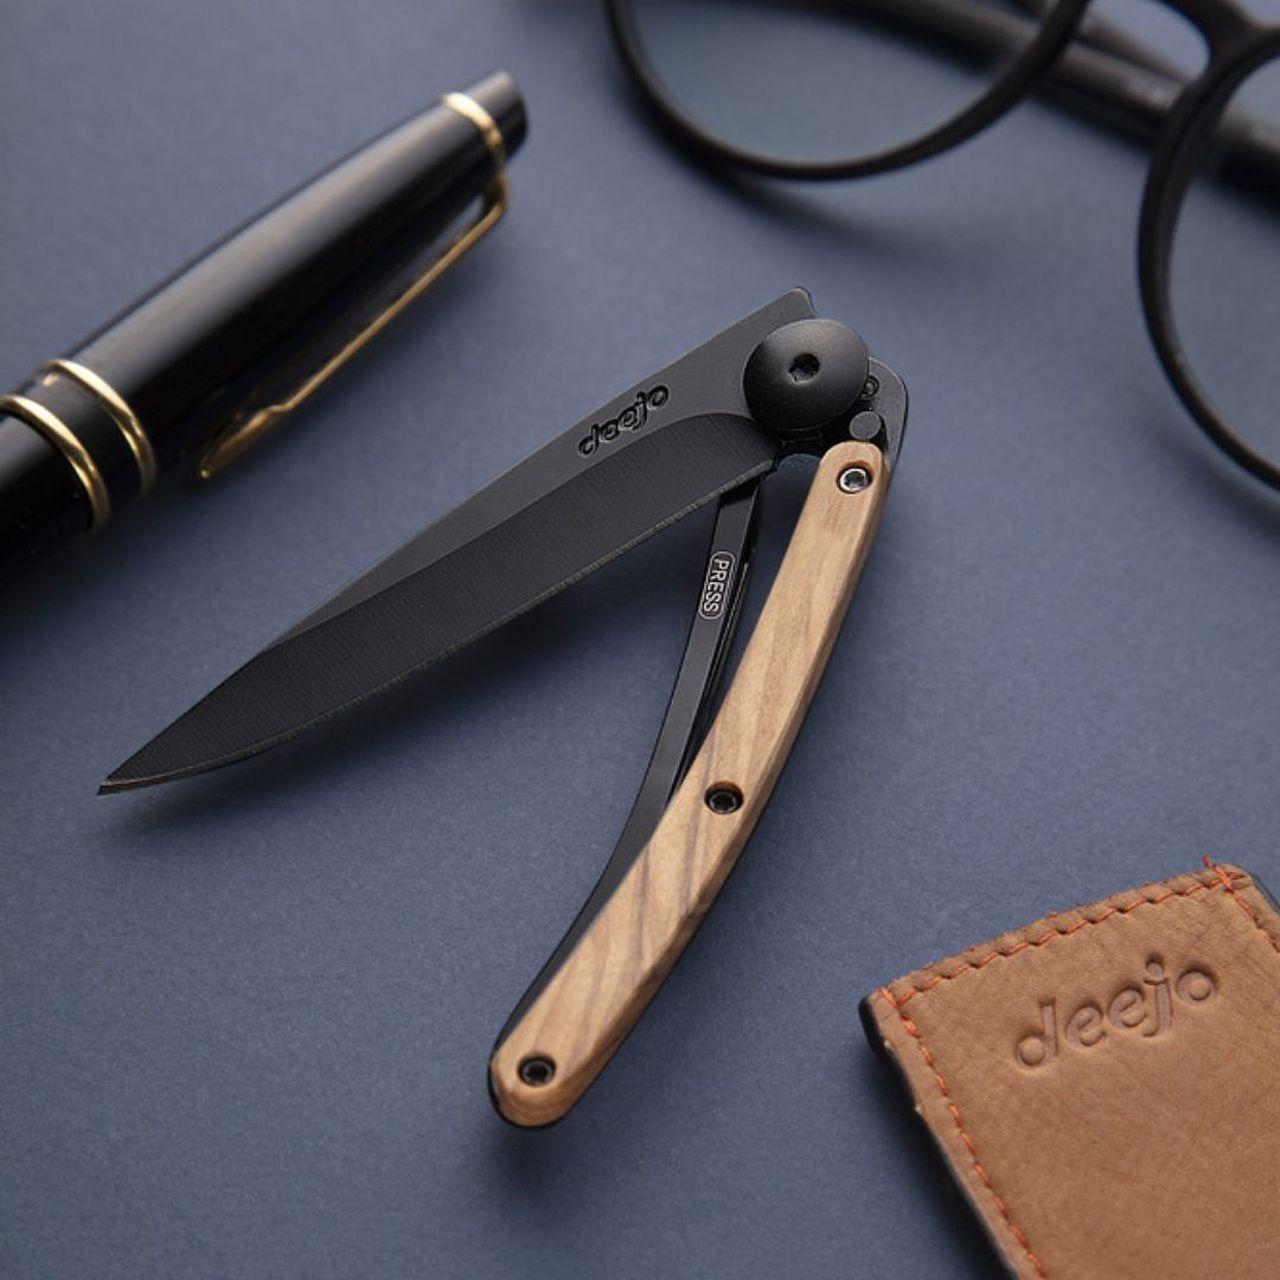 Deejo 27g, Pocket Knife, Black, Olive Wood